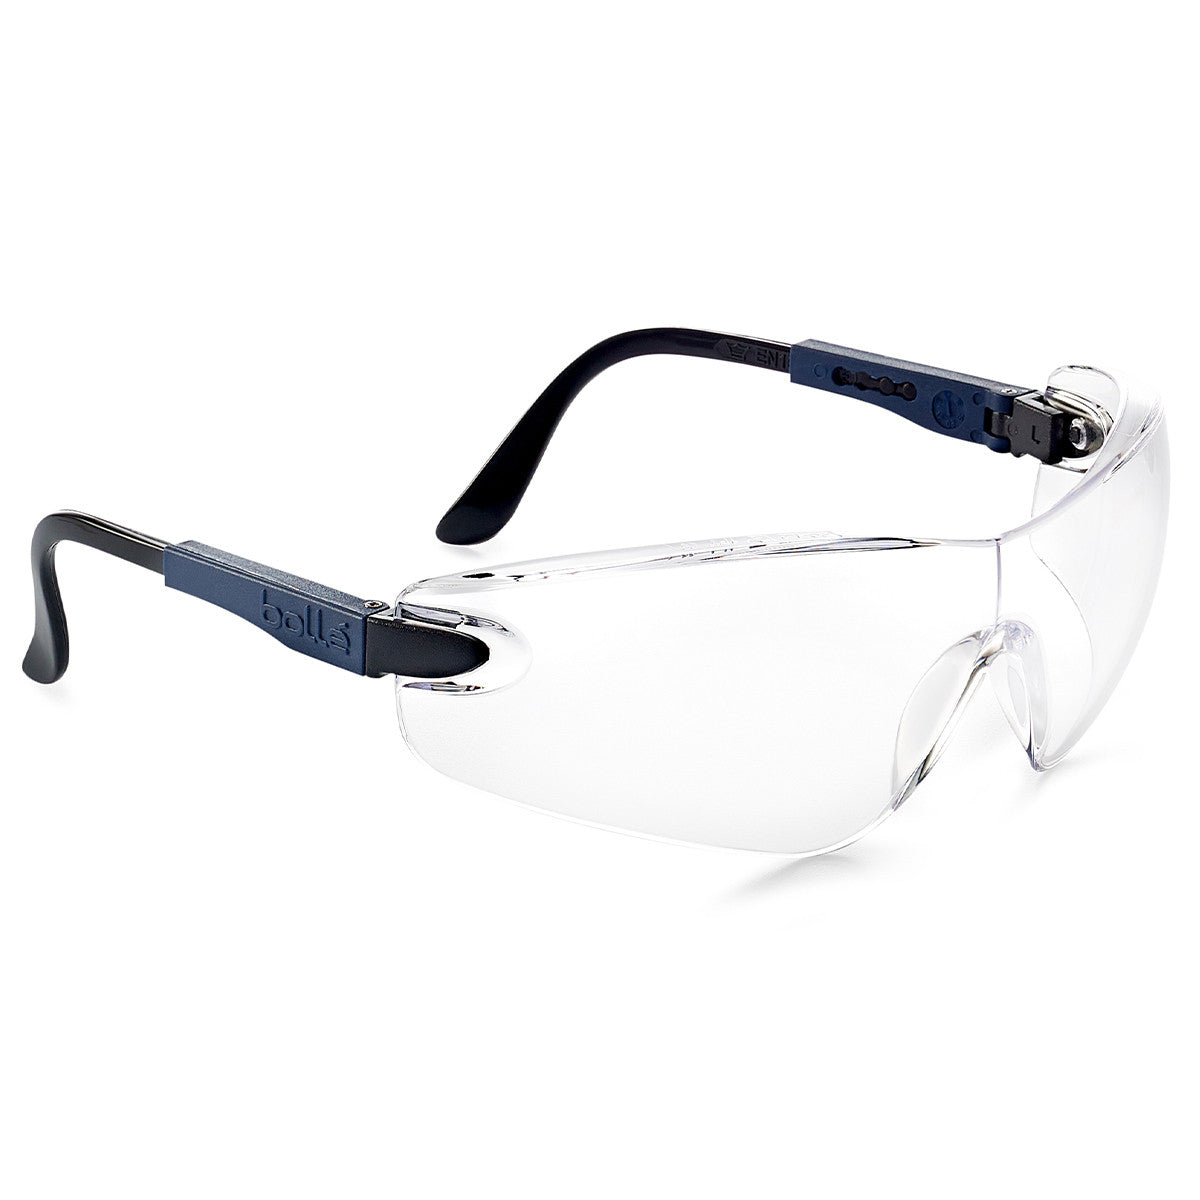 Bollé Safety Viper Safety Glasses